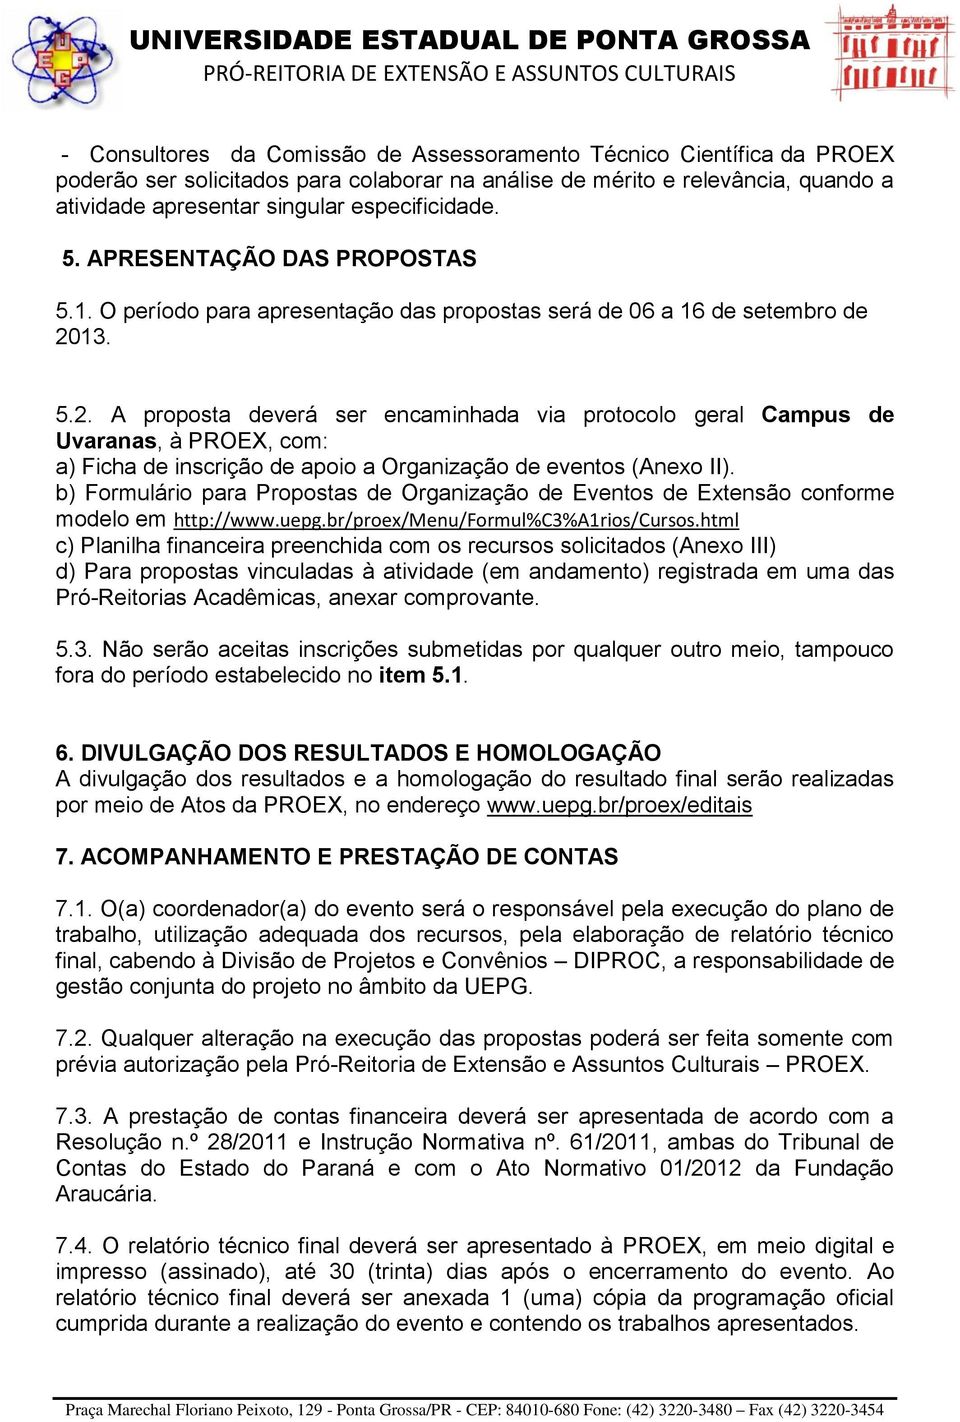 13. 5.2. A proposta deverá ser encaminhada via protocolo geral Campus de Uvaranas, à PROEX, com: a) Ficha de inscrição de apoio a Organização de eventos (Anexo II).